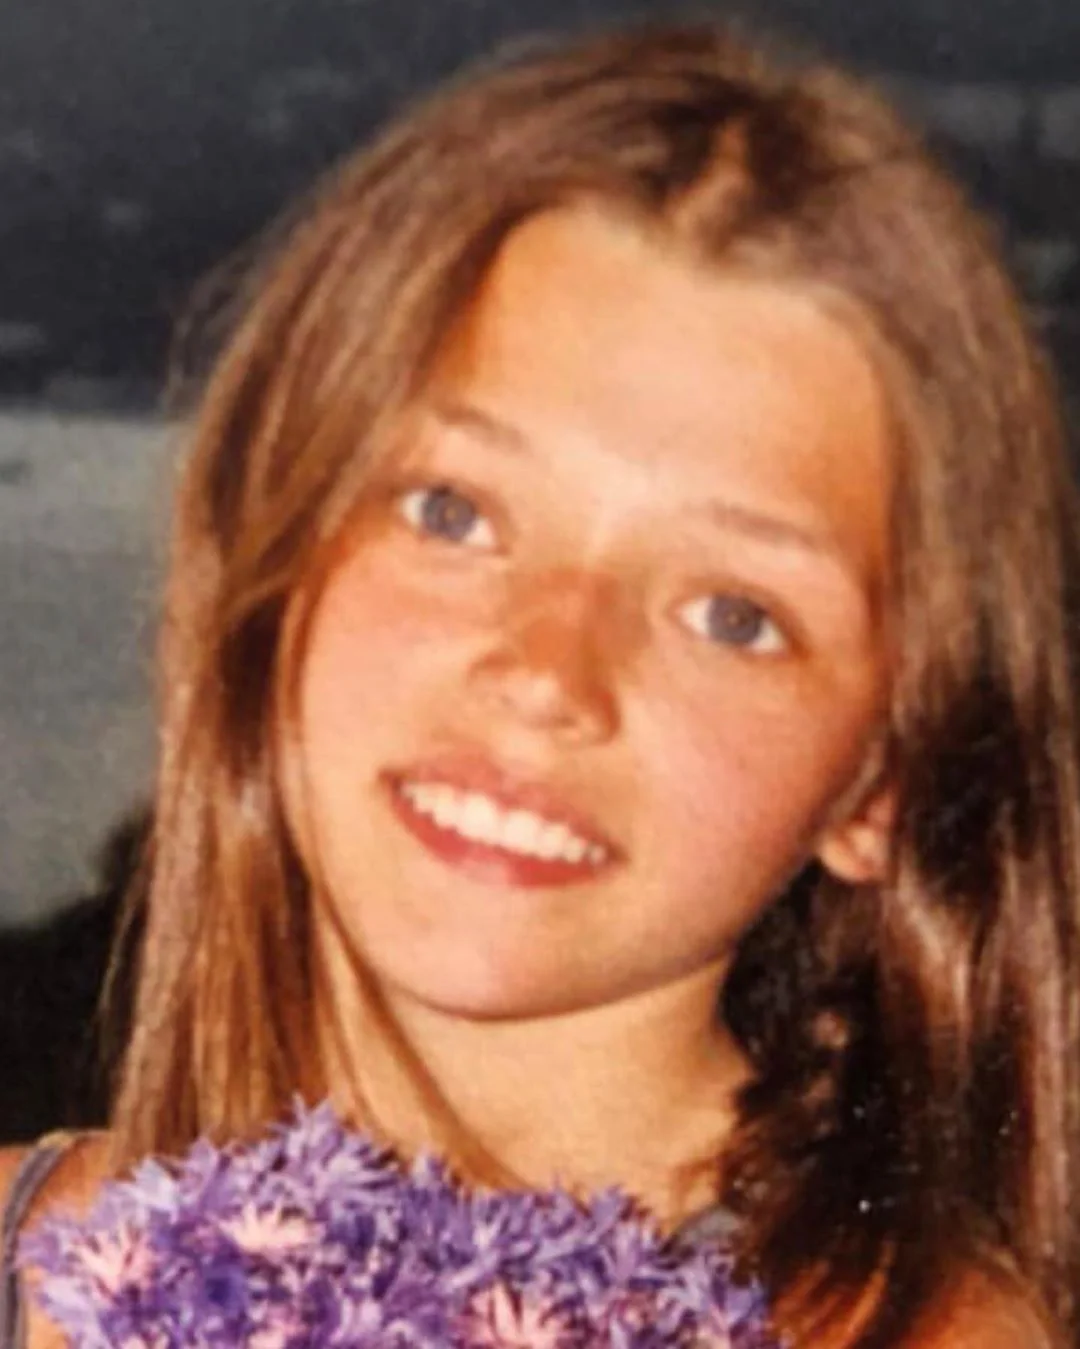 Алина Астровская показала архивное фото, которое доказывает, что она - красавица с детства - фото 457310